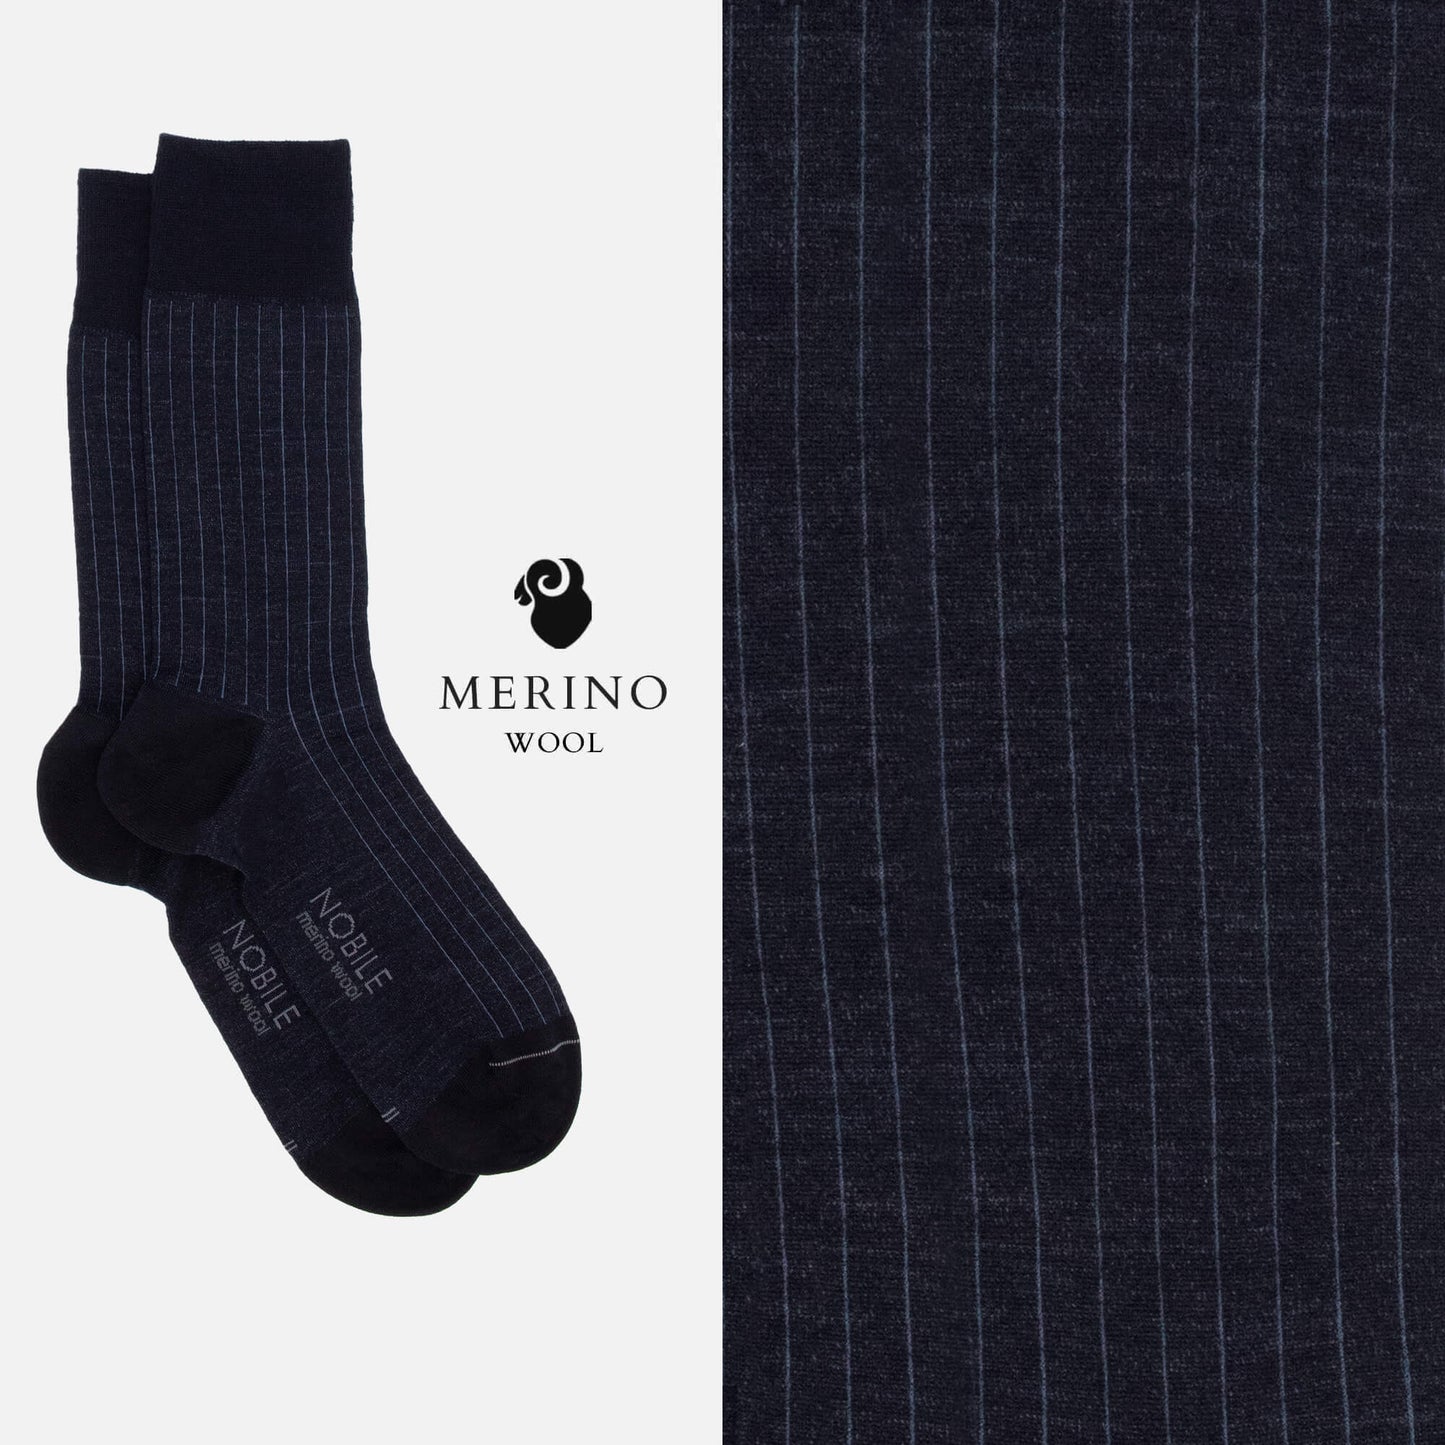 Northen Ribs - Box of 6 crew socks in Merino wool with micro ribs